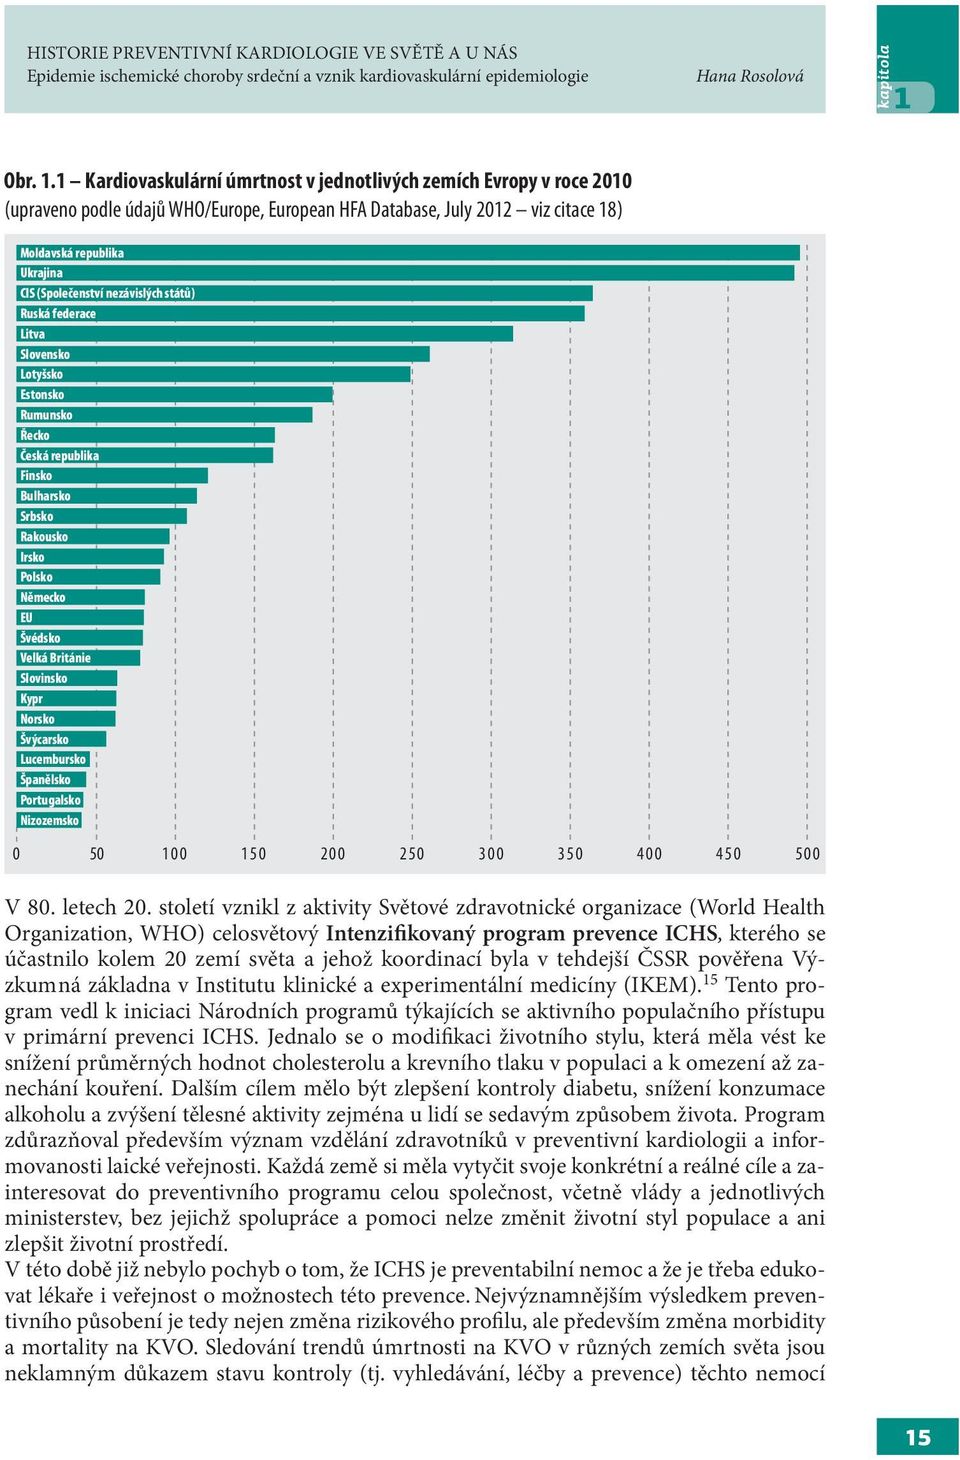 1 Kardiovaskulární úmrtnost v jednotlivých zemích Evropy v roce 2010 (upraveno podle údajů WHO/Europe, European HFA Database, July 2012 viz citace 18) Moldavská republika Ukrajina CIS (Společenství